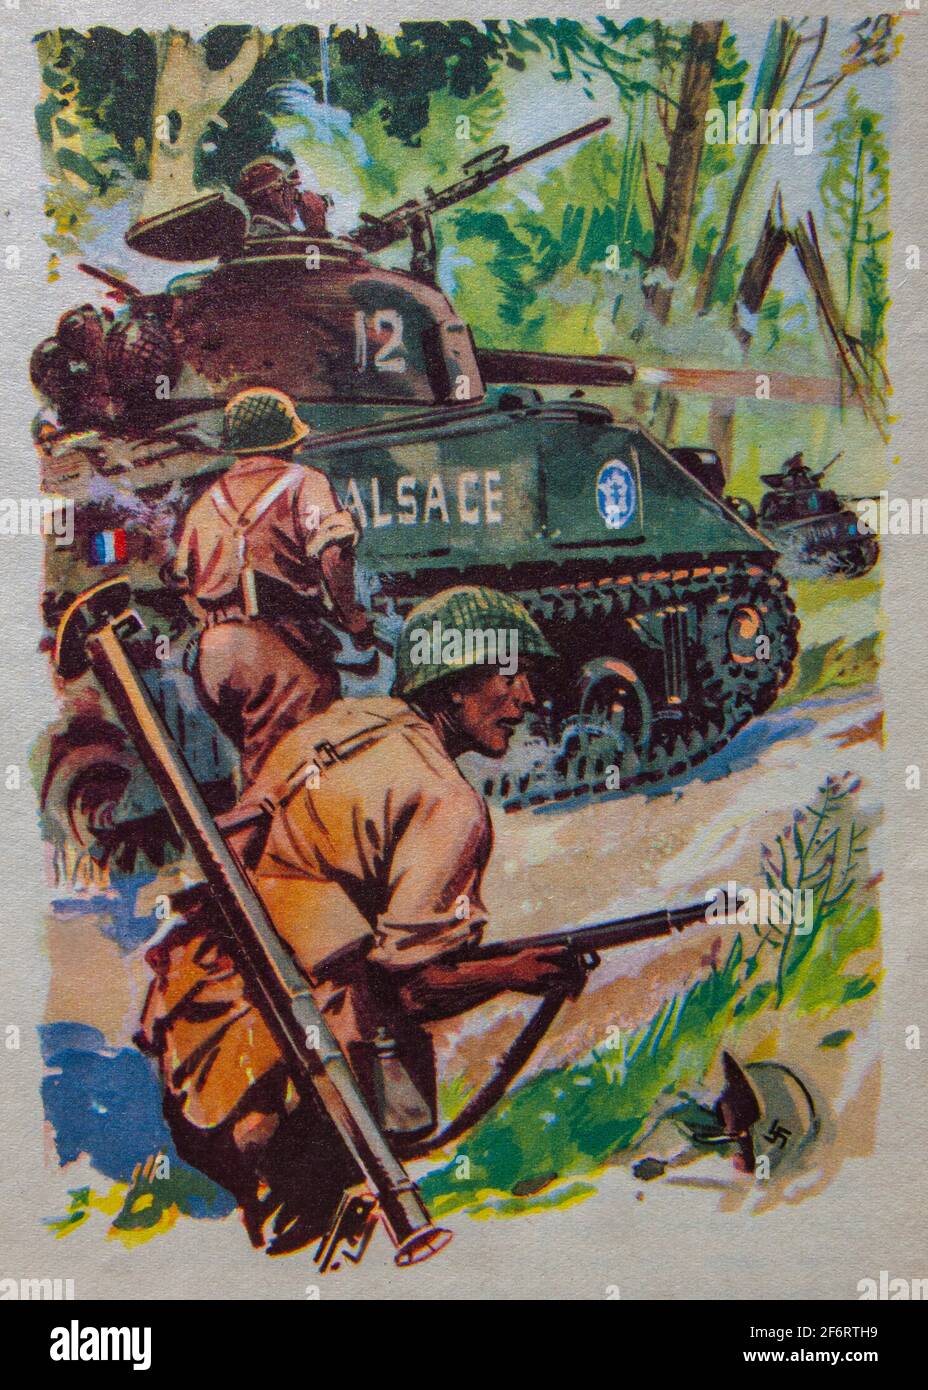 La route de la 2e Division blindée (en français : voie de la 2e Division Blindée) est une série de bollards commémoratifs marquant la route empruntée par le Banque D'Images